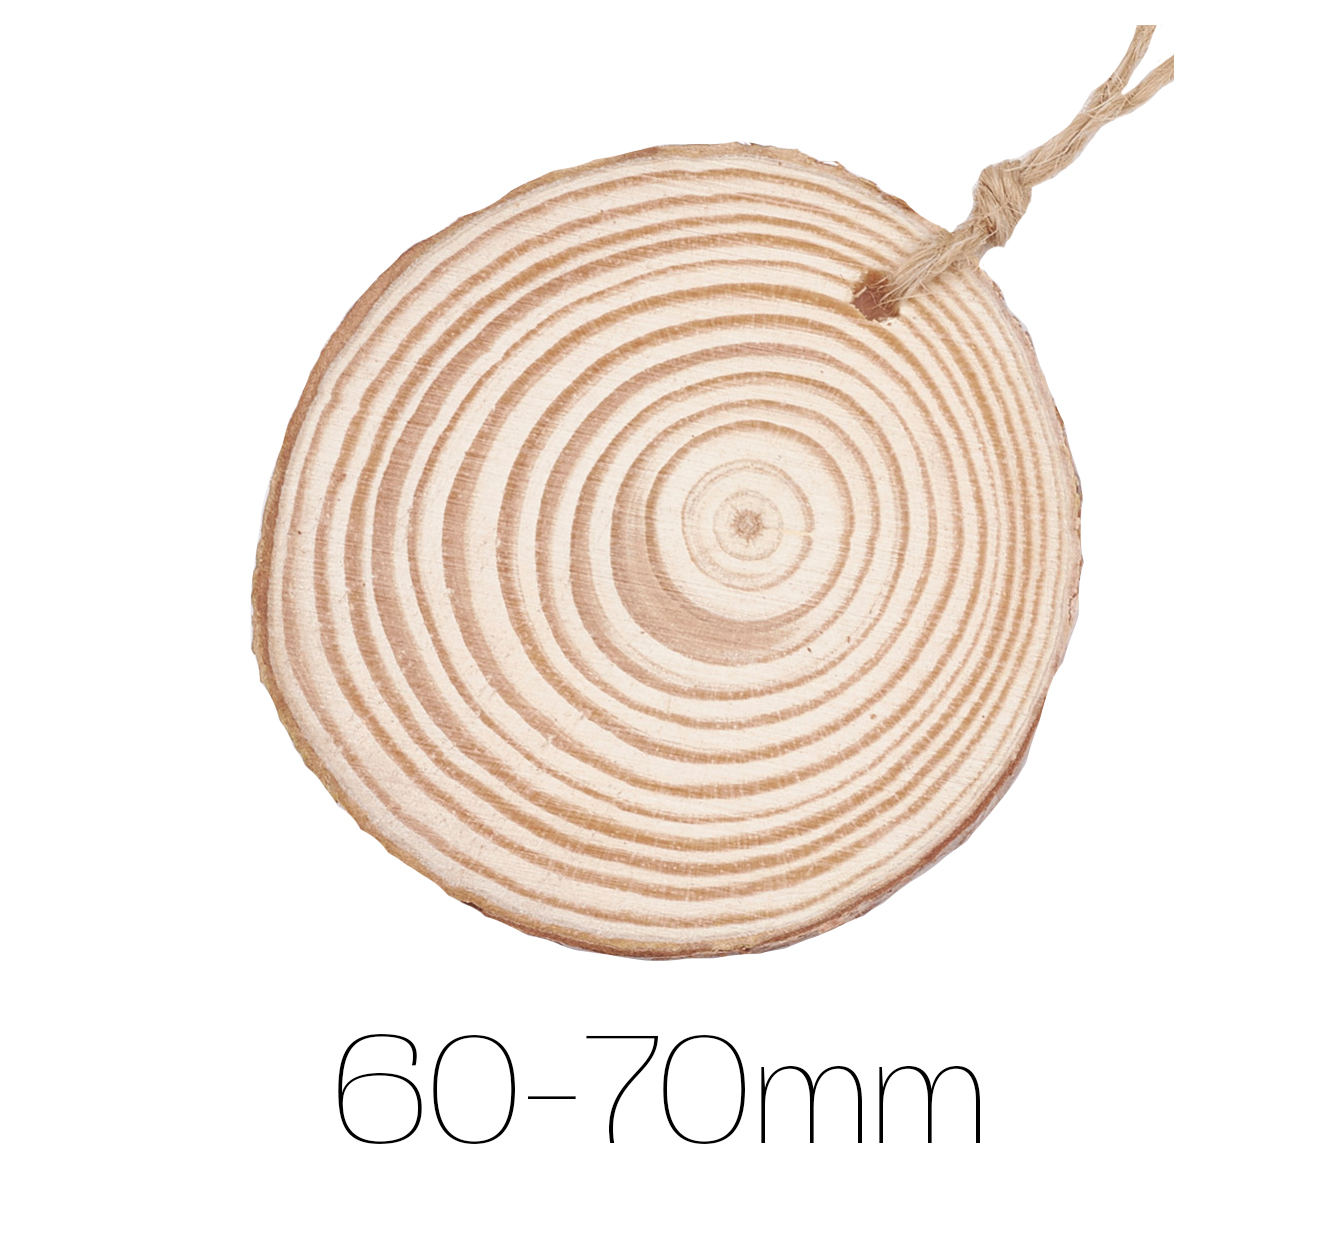 Holzscheibe gebohrt 60-70mm 10 Stück natur 